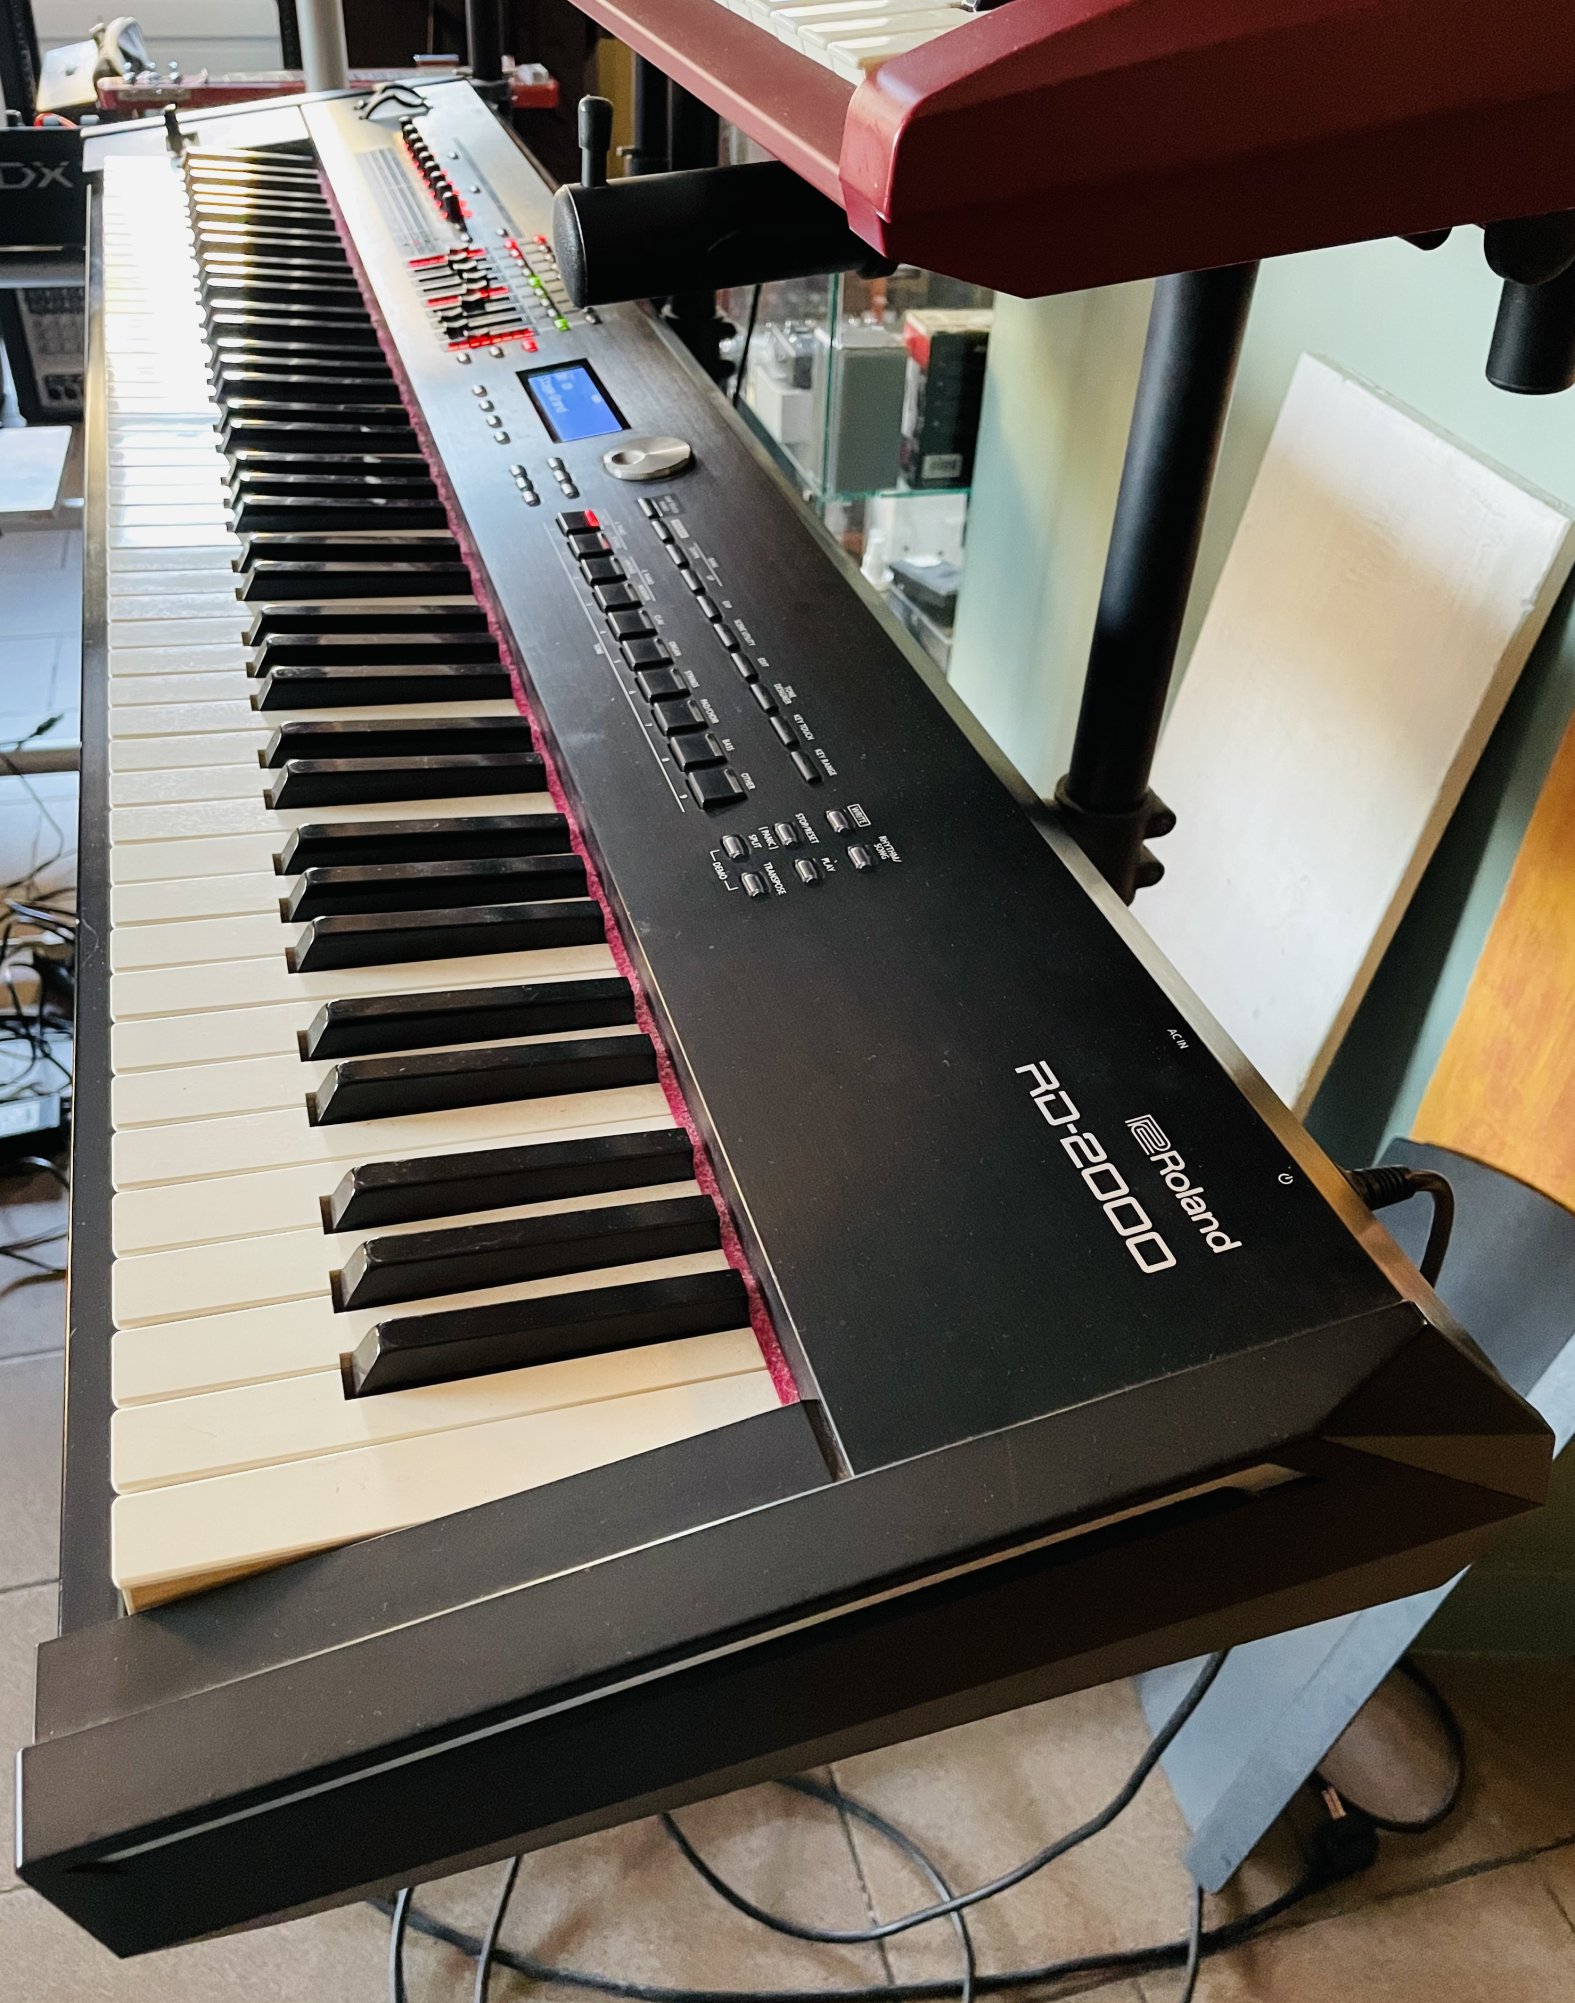 Piano numérique synthé 88 touches Roland RD-2000 n°Z016677, alim